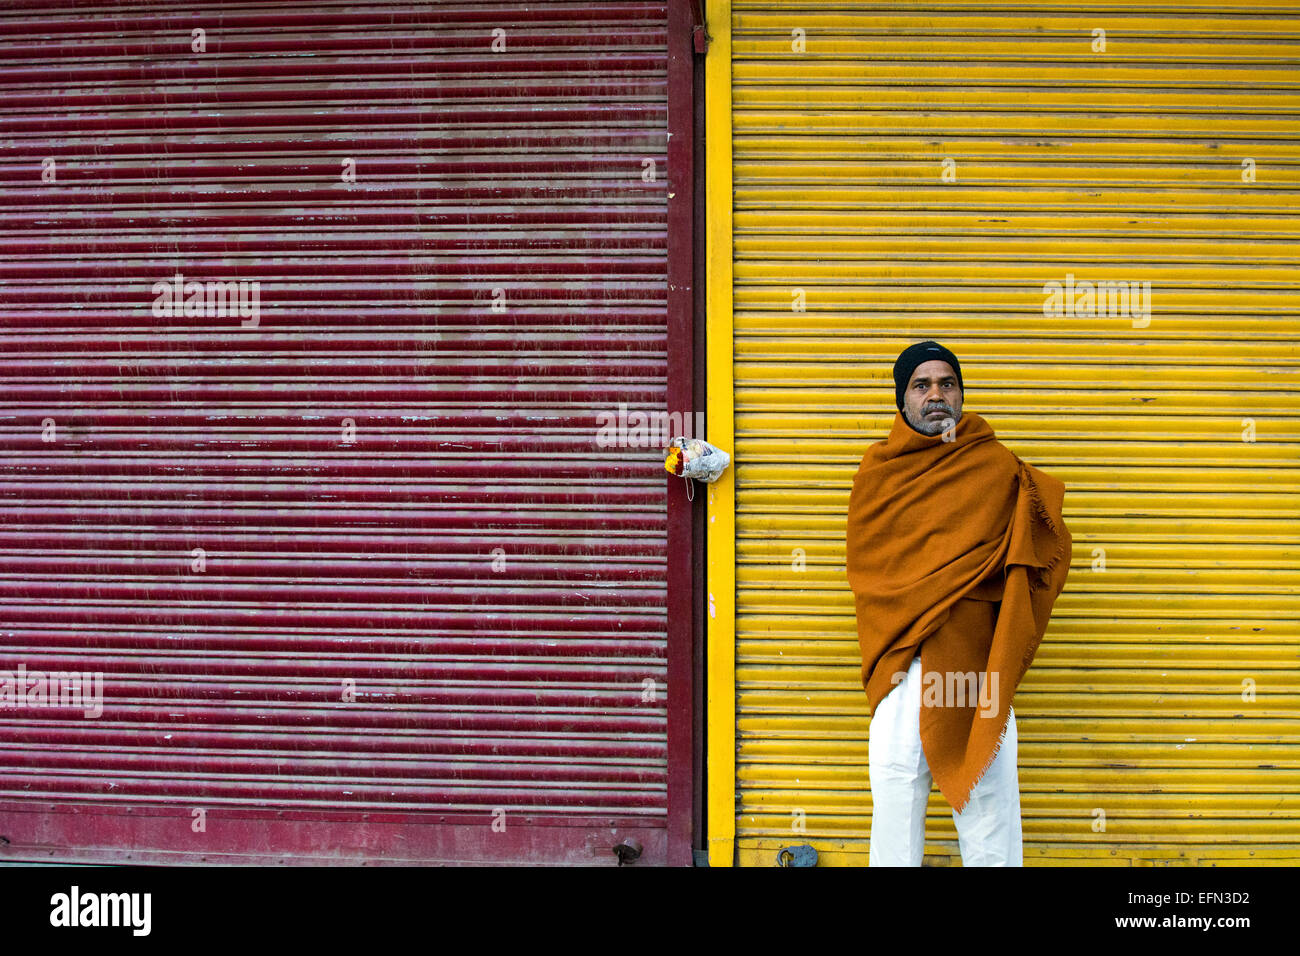 Mann, traditionelle, indische, Farbe, Kontrast, Auslöser, Ladenfronten, geschlossenen Geschäfte, Chandni Chowk, Delhi, Indien, Marktplatz Stockfoto